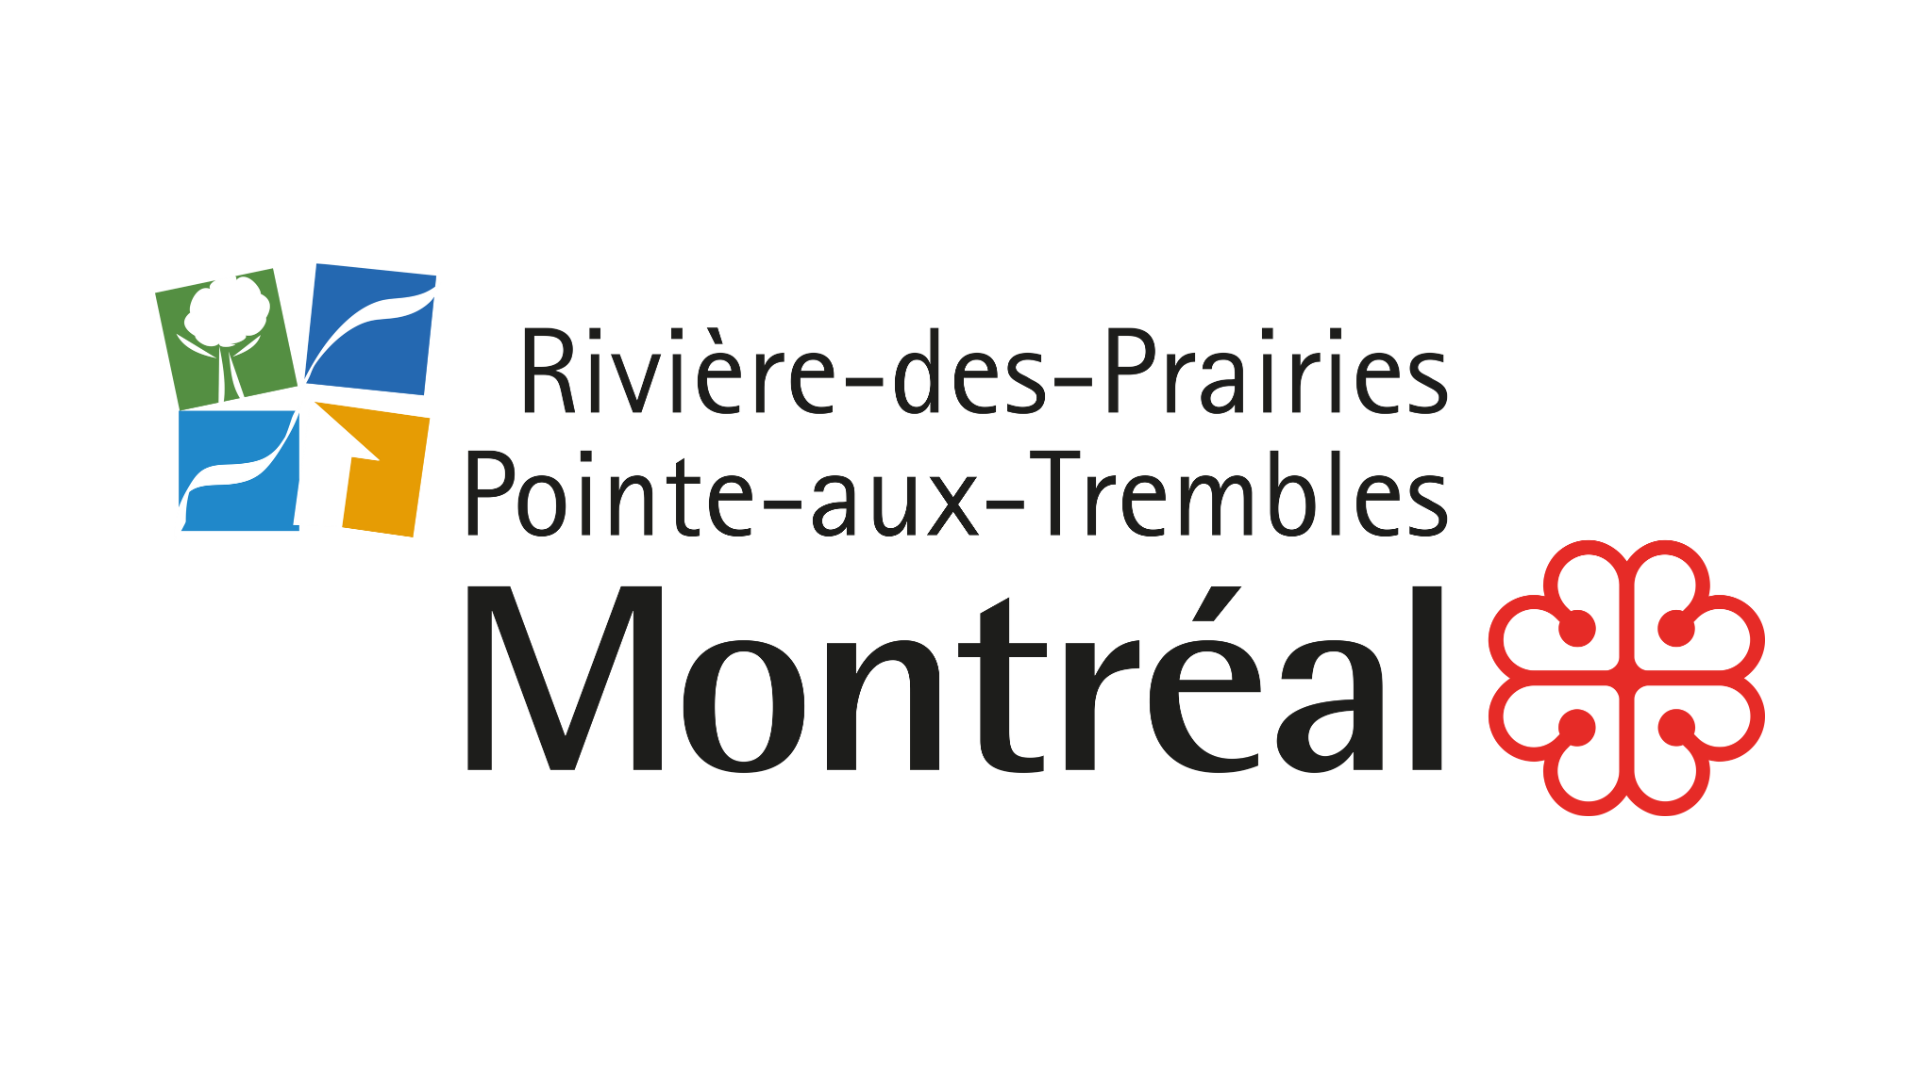 Arrondissement de Rivière-des-Prairies – Pointe-aux-Trembles